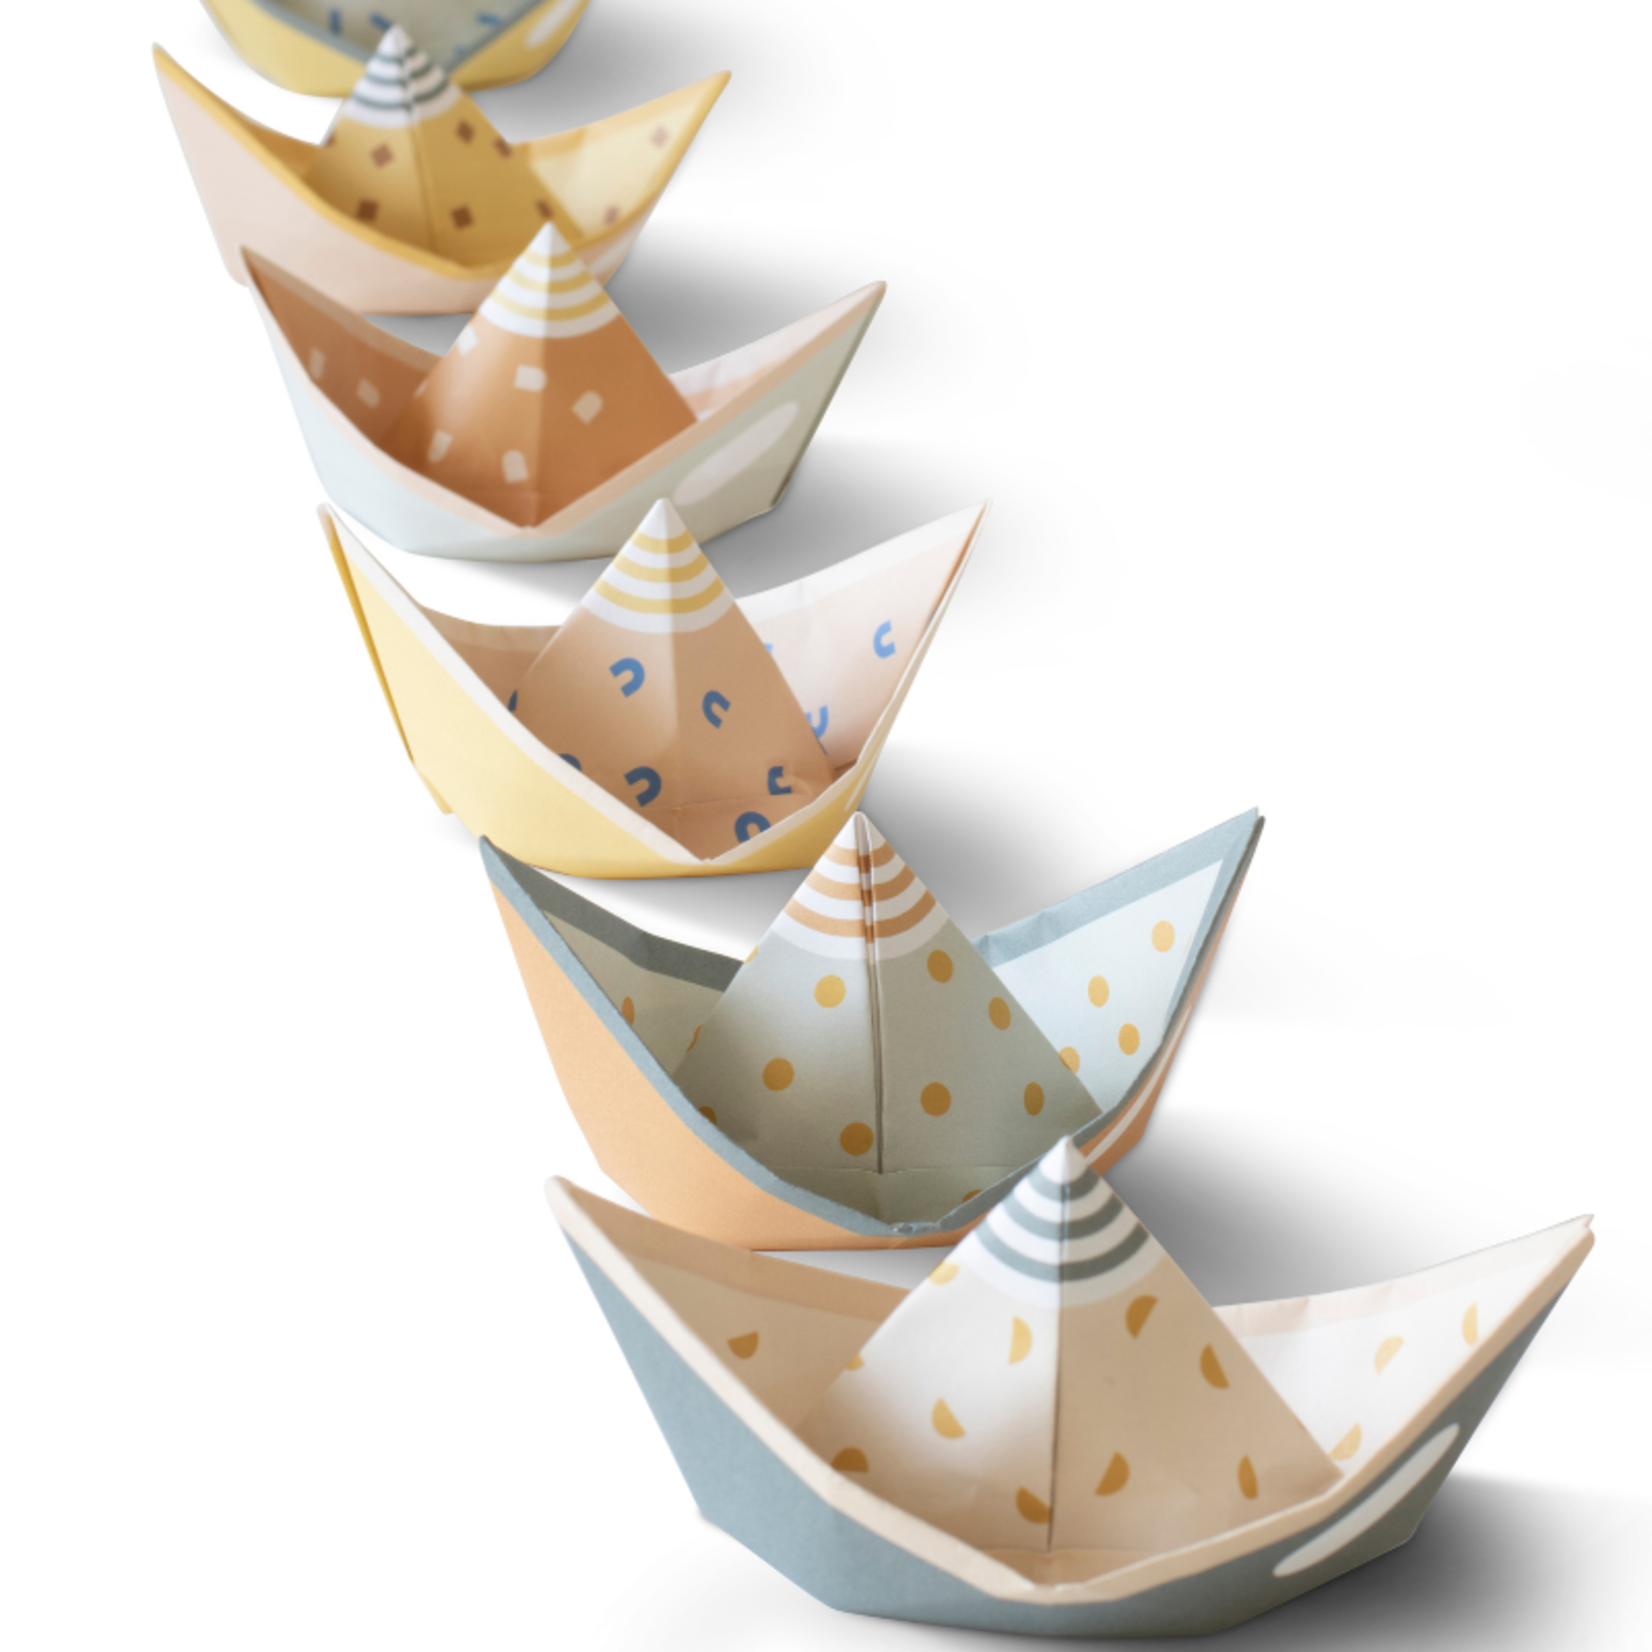 jurianne matter  jurianne matter - segel  folding boats